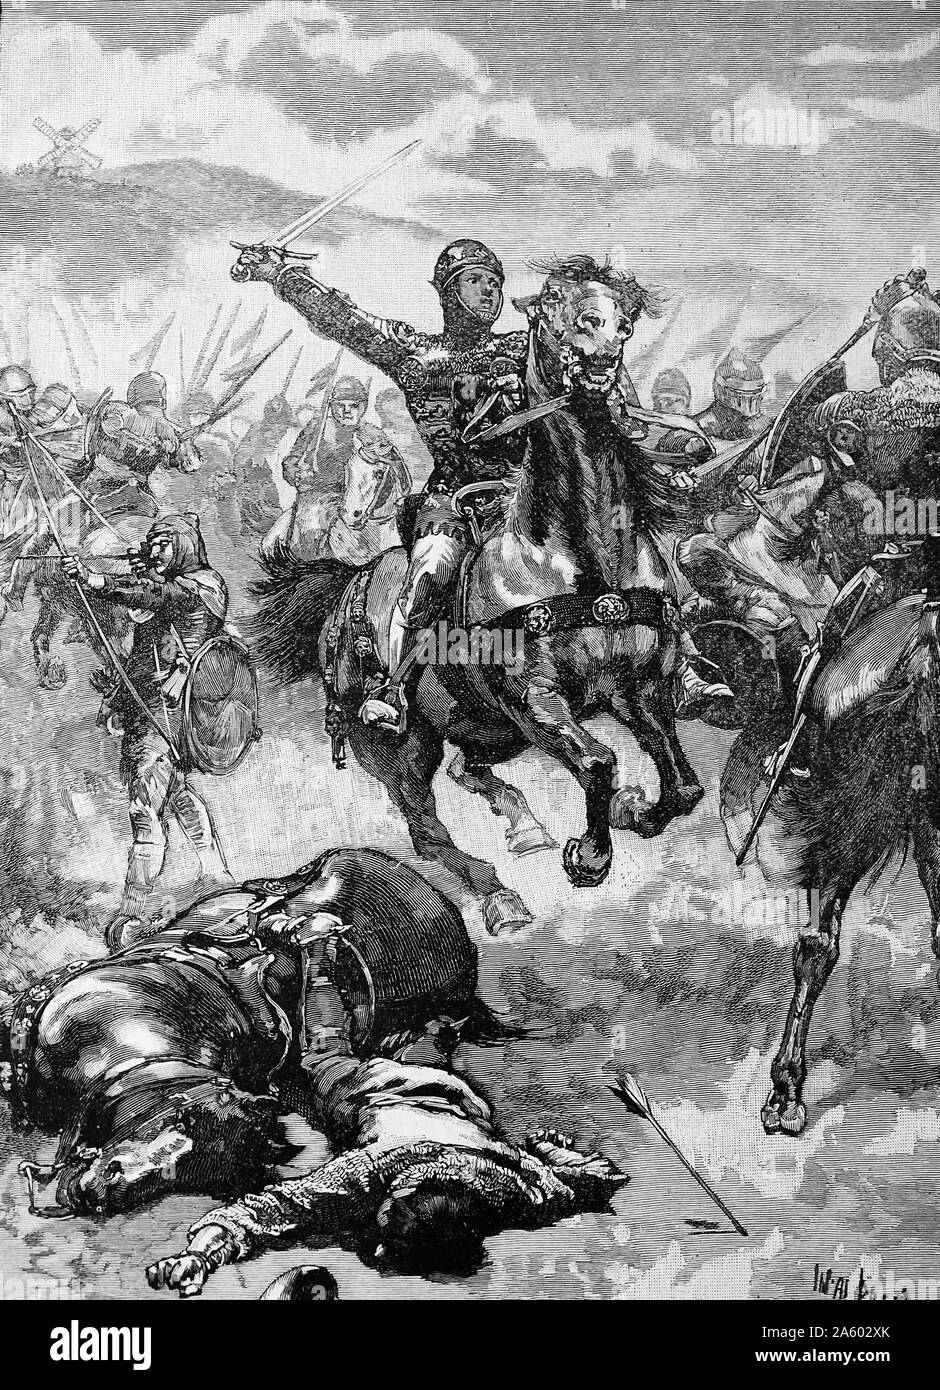 Edward, der schwarze Prinz (1330-76) befahl den richtigen Wind die englischen Truppen in der Schlacht von Crécy 1346, als er erst 16 war. Hundertjährigen Krieg zwischen England und Frankreich. Stockfoto